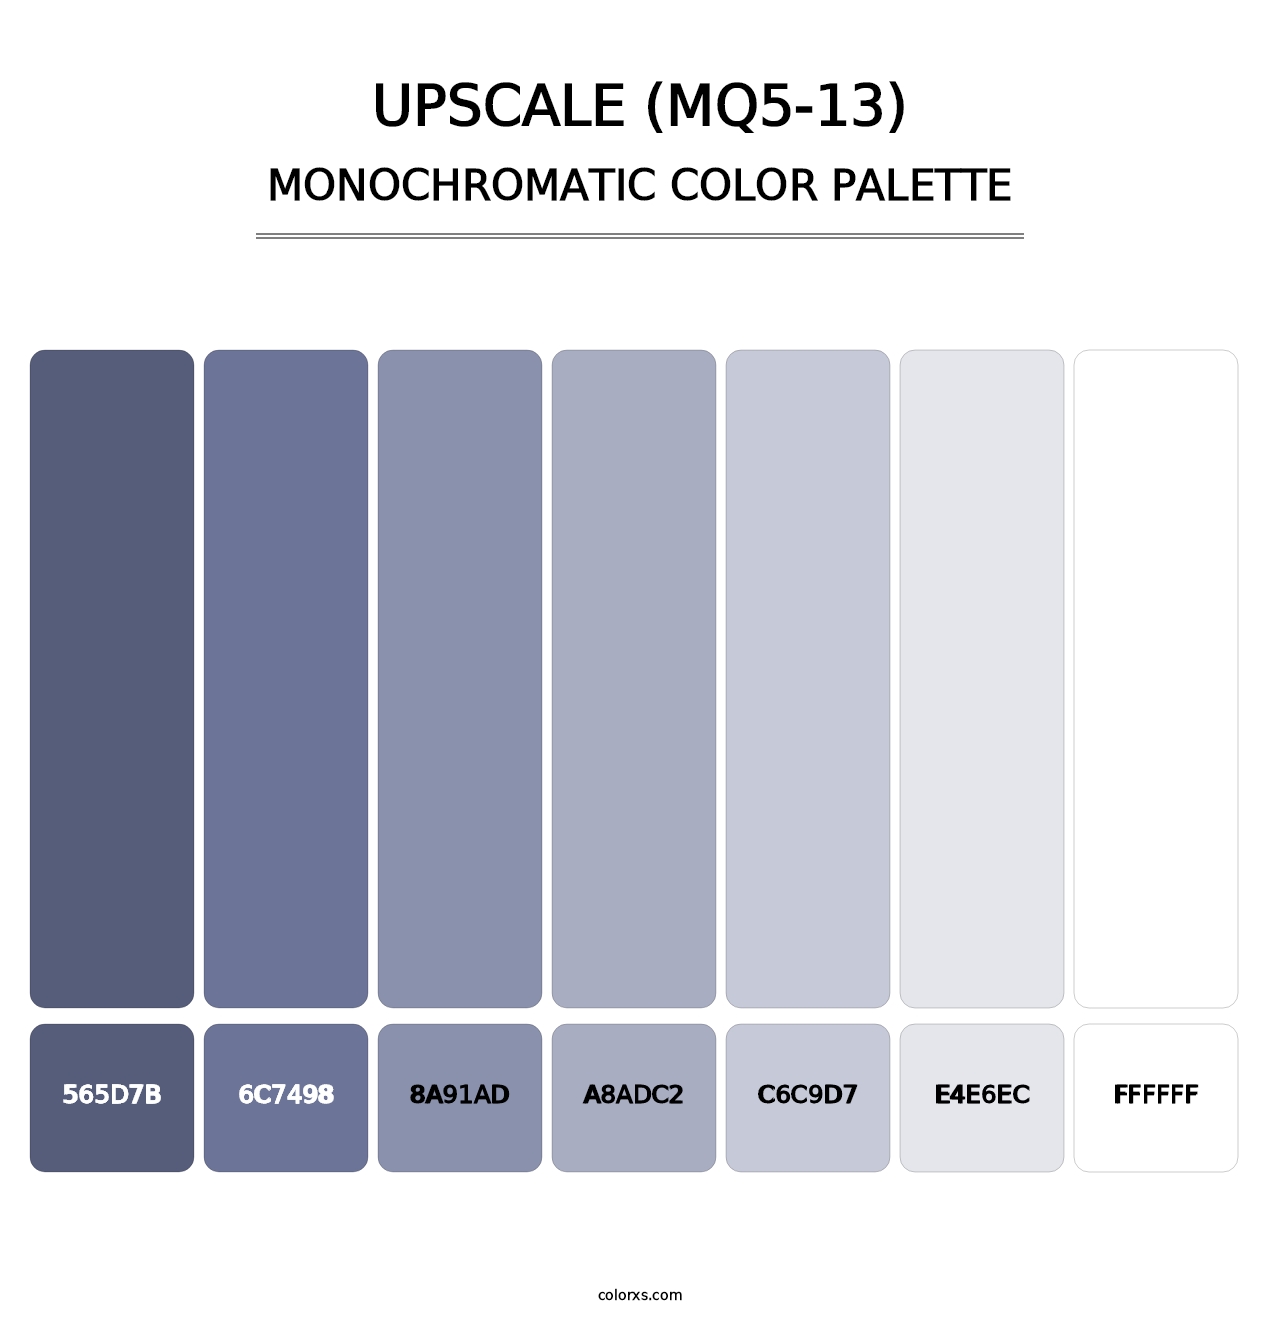 Upscale (MQ5-13) - Monochromatic Color Palette